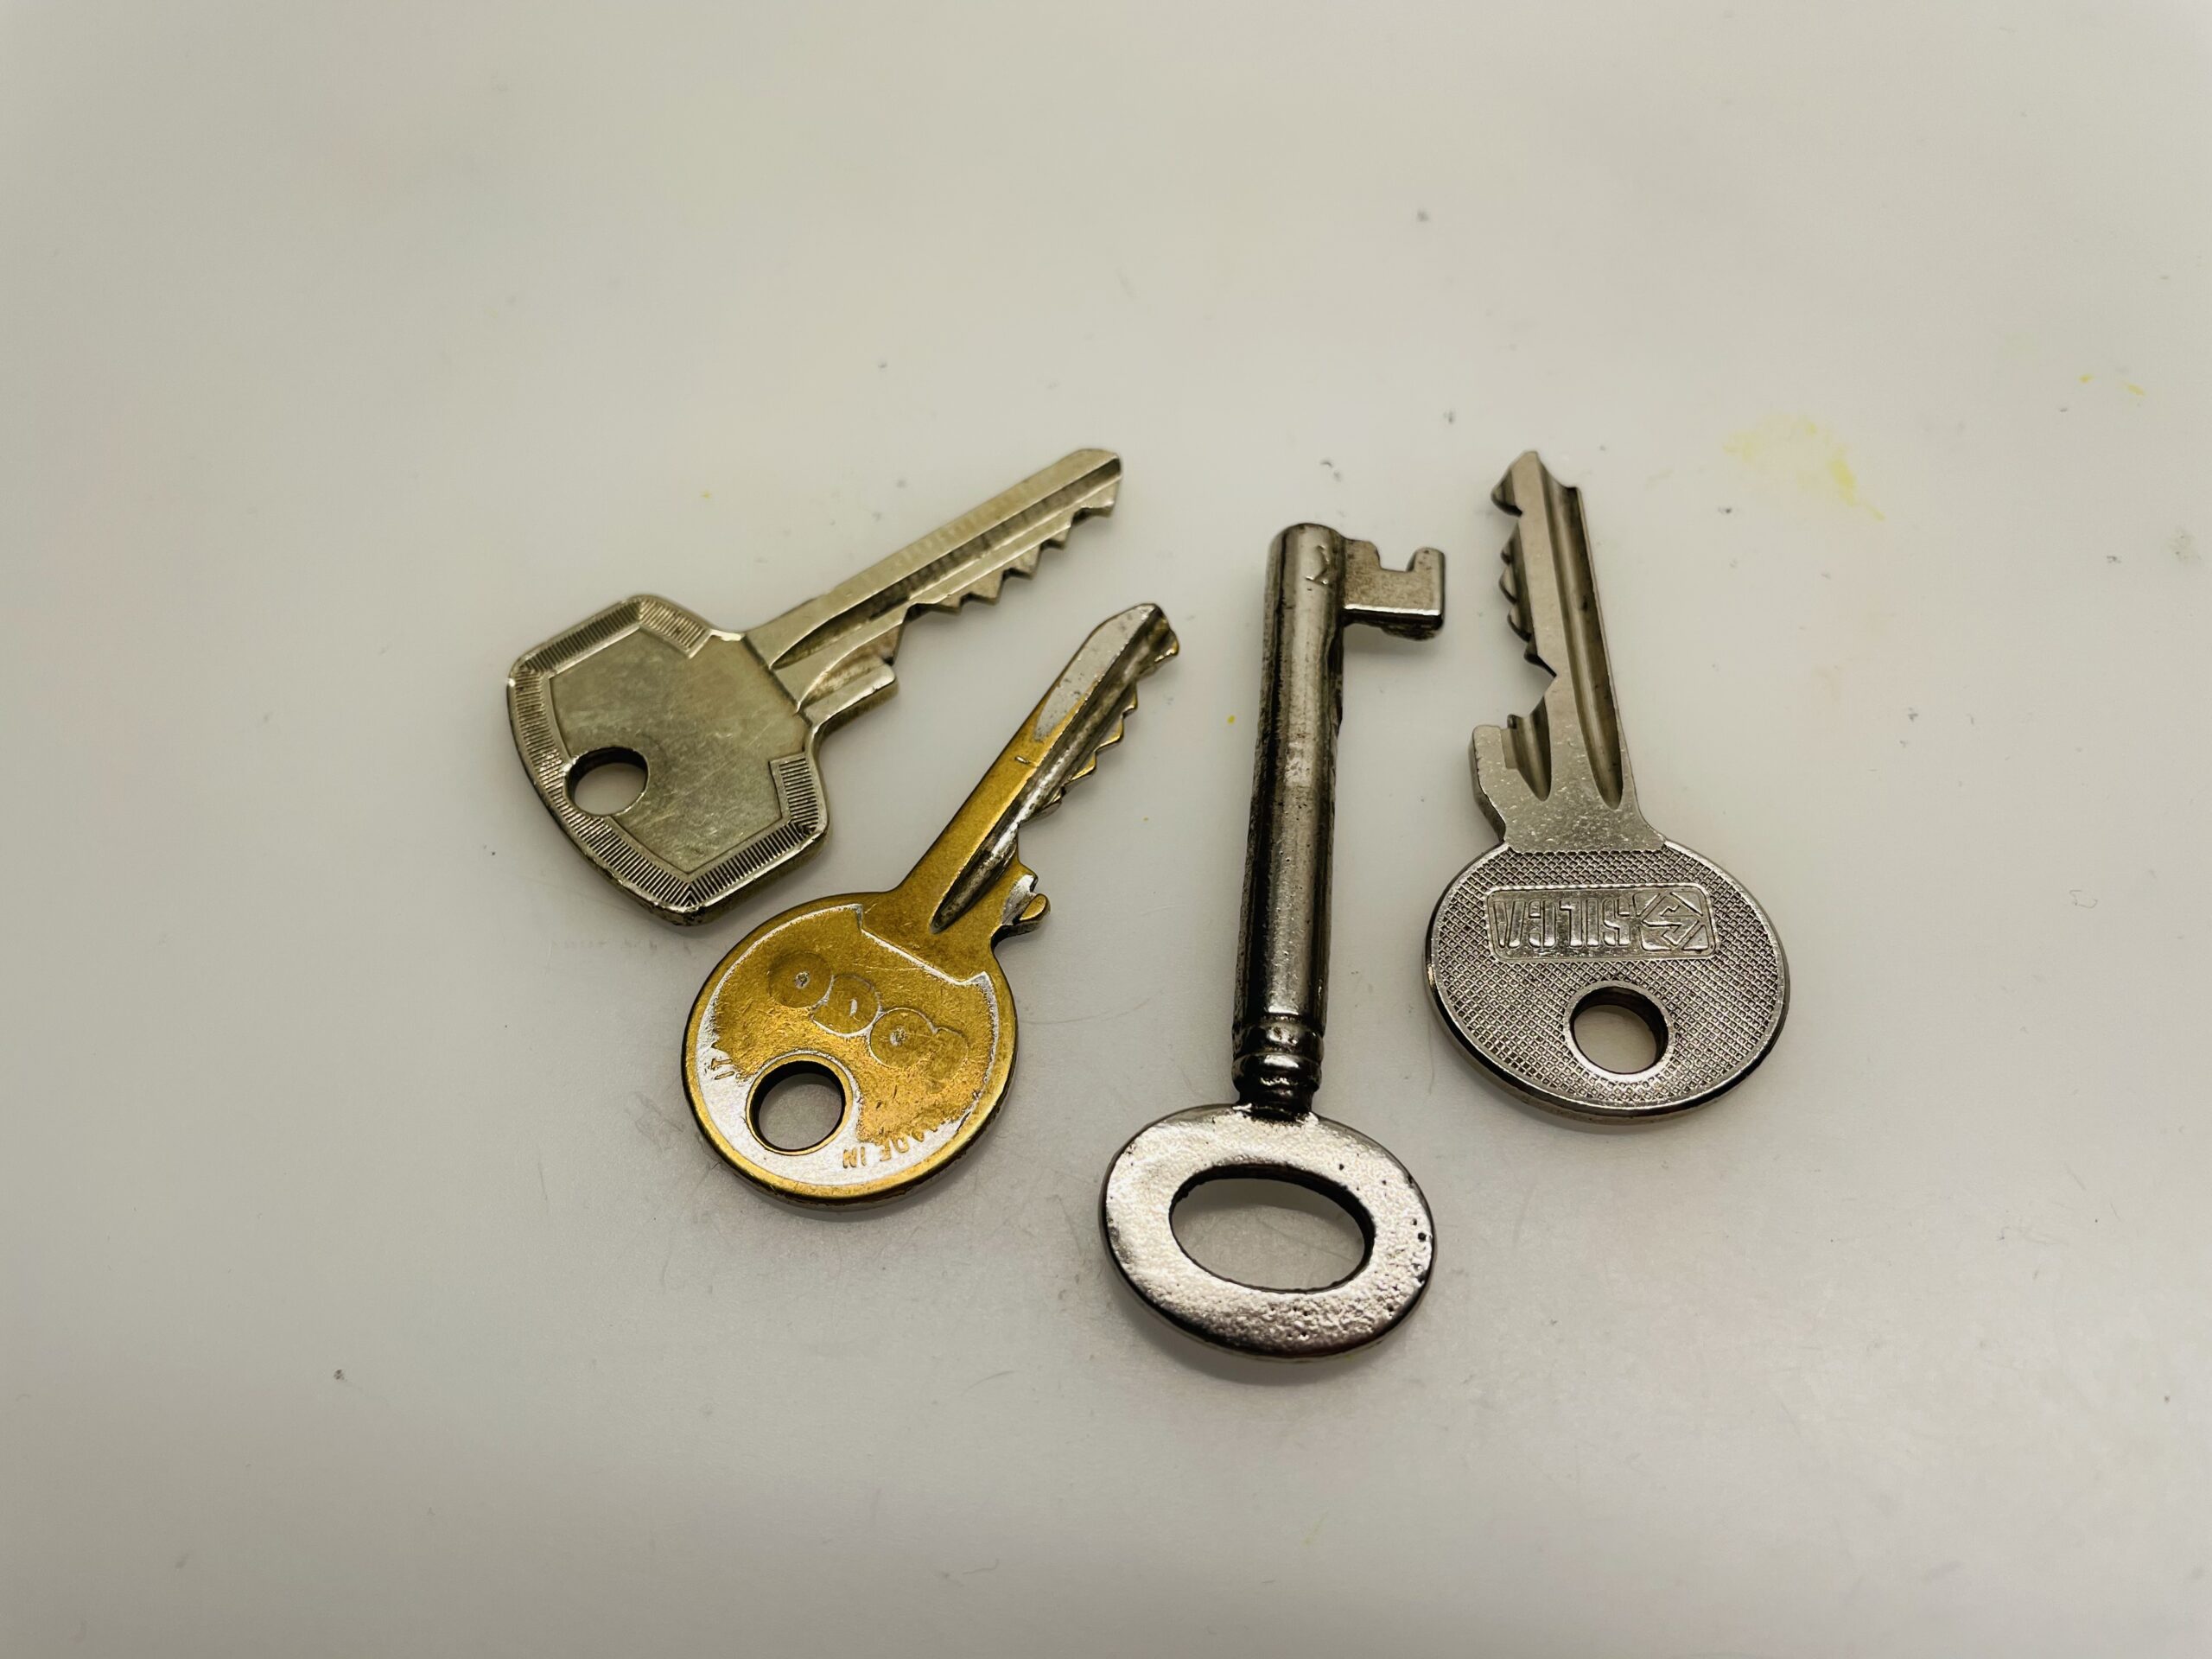 Bild zum Schritt 14 für das Bastel- und DIY-Abenteuer für Kinder: 'Wer bekommt welchen Schlüssel oder welcher Schlüssel öffnet welche Schatzkiste...'